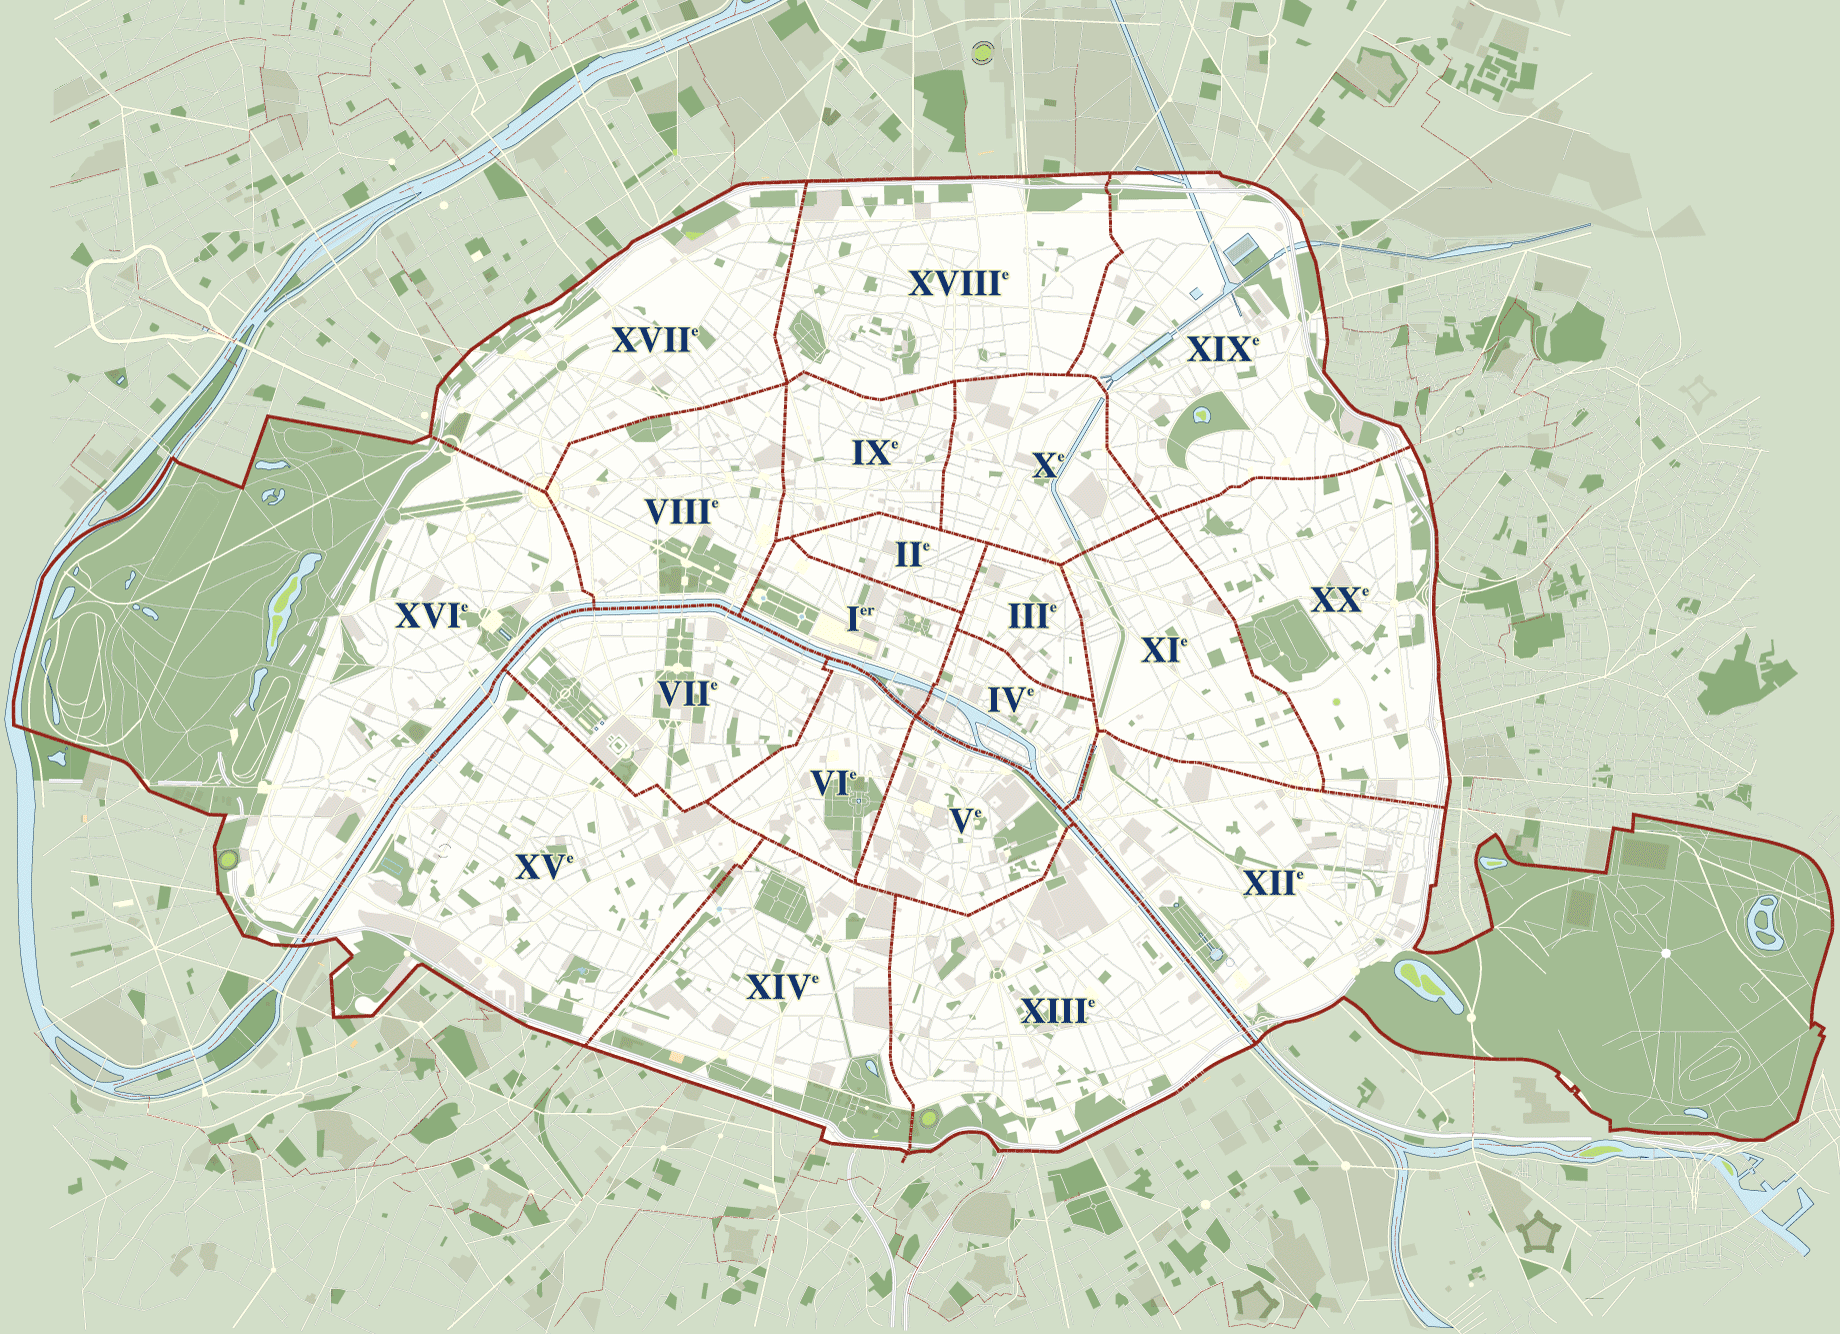 plan de paris arrondissement